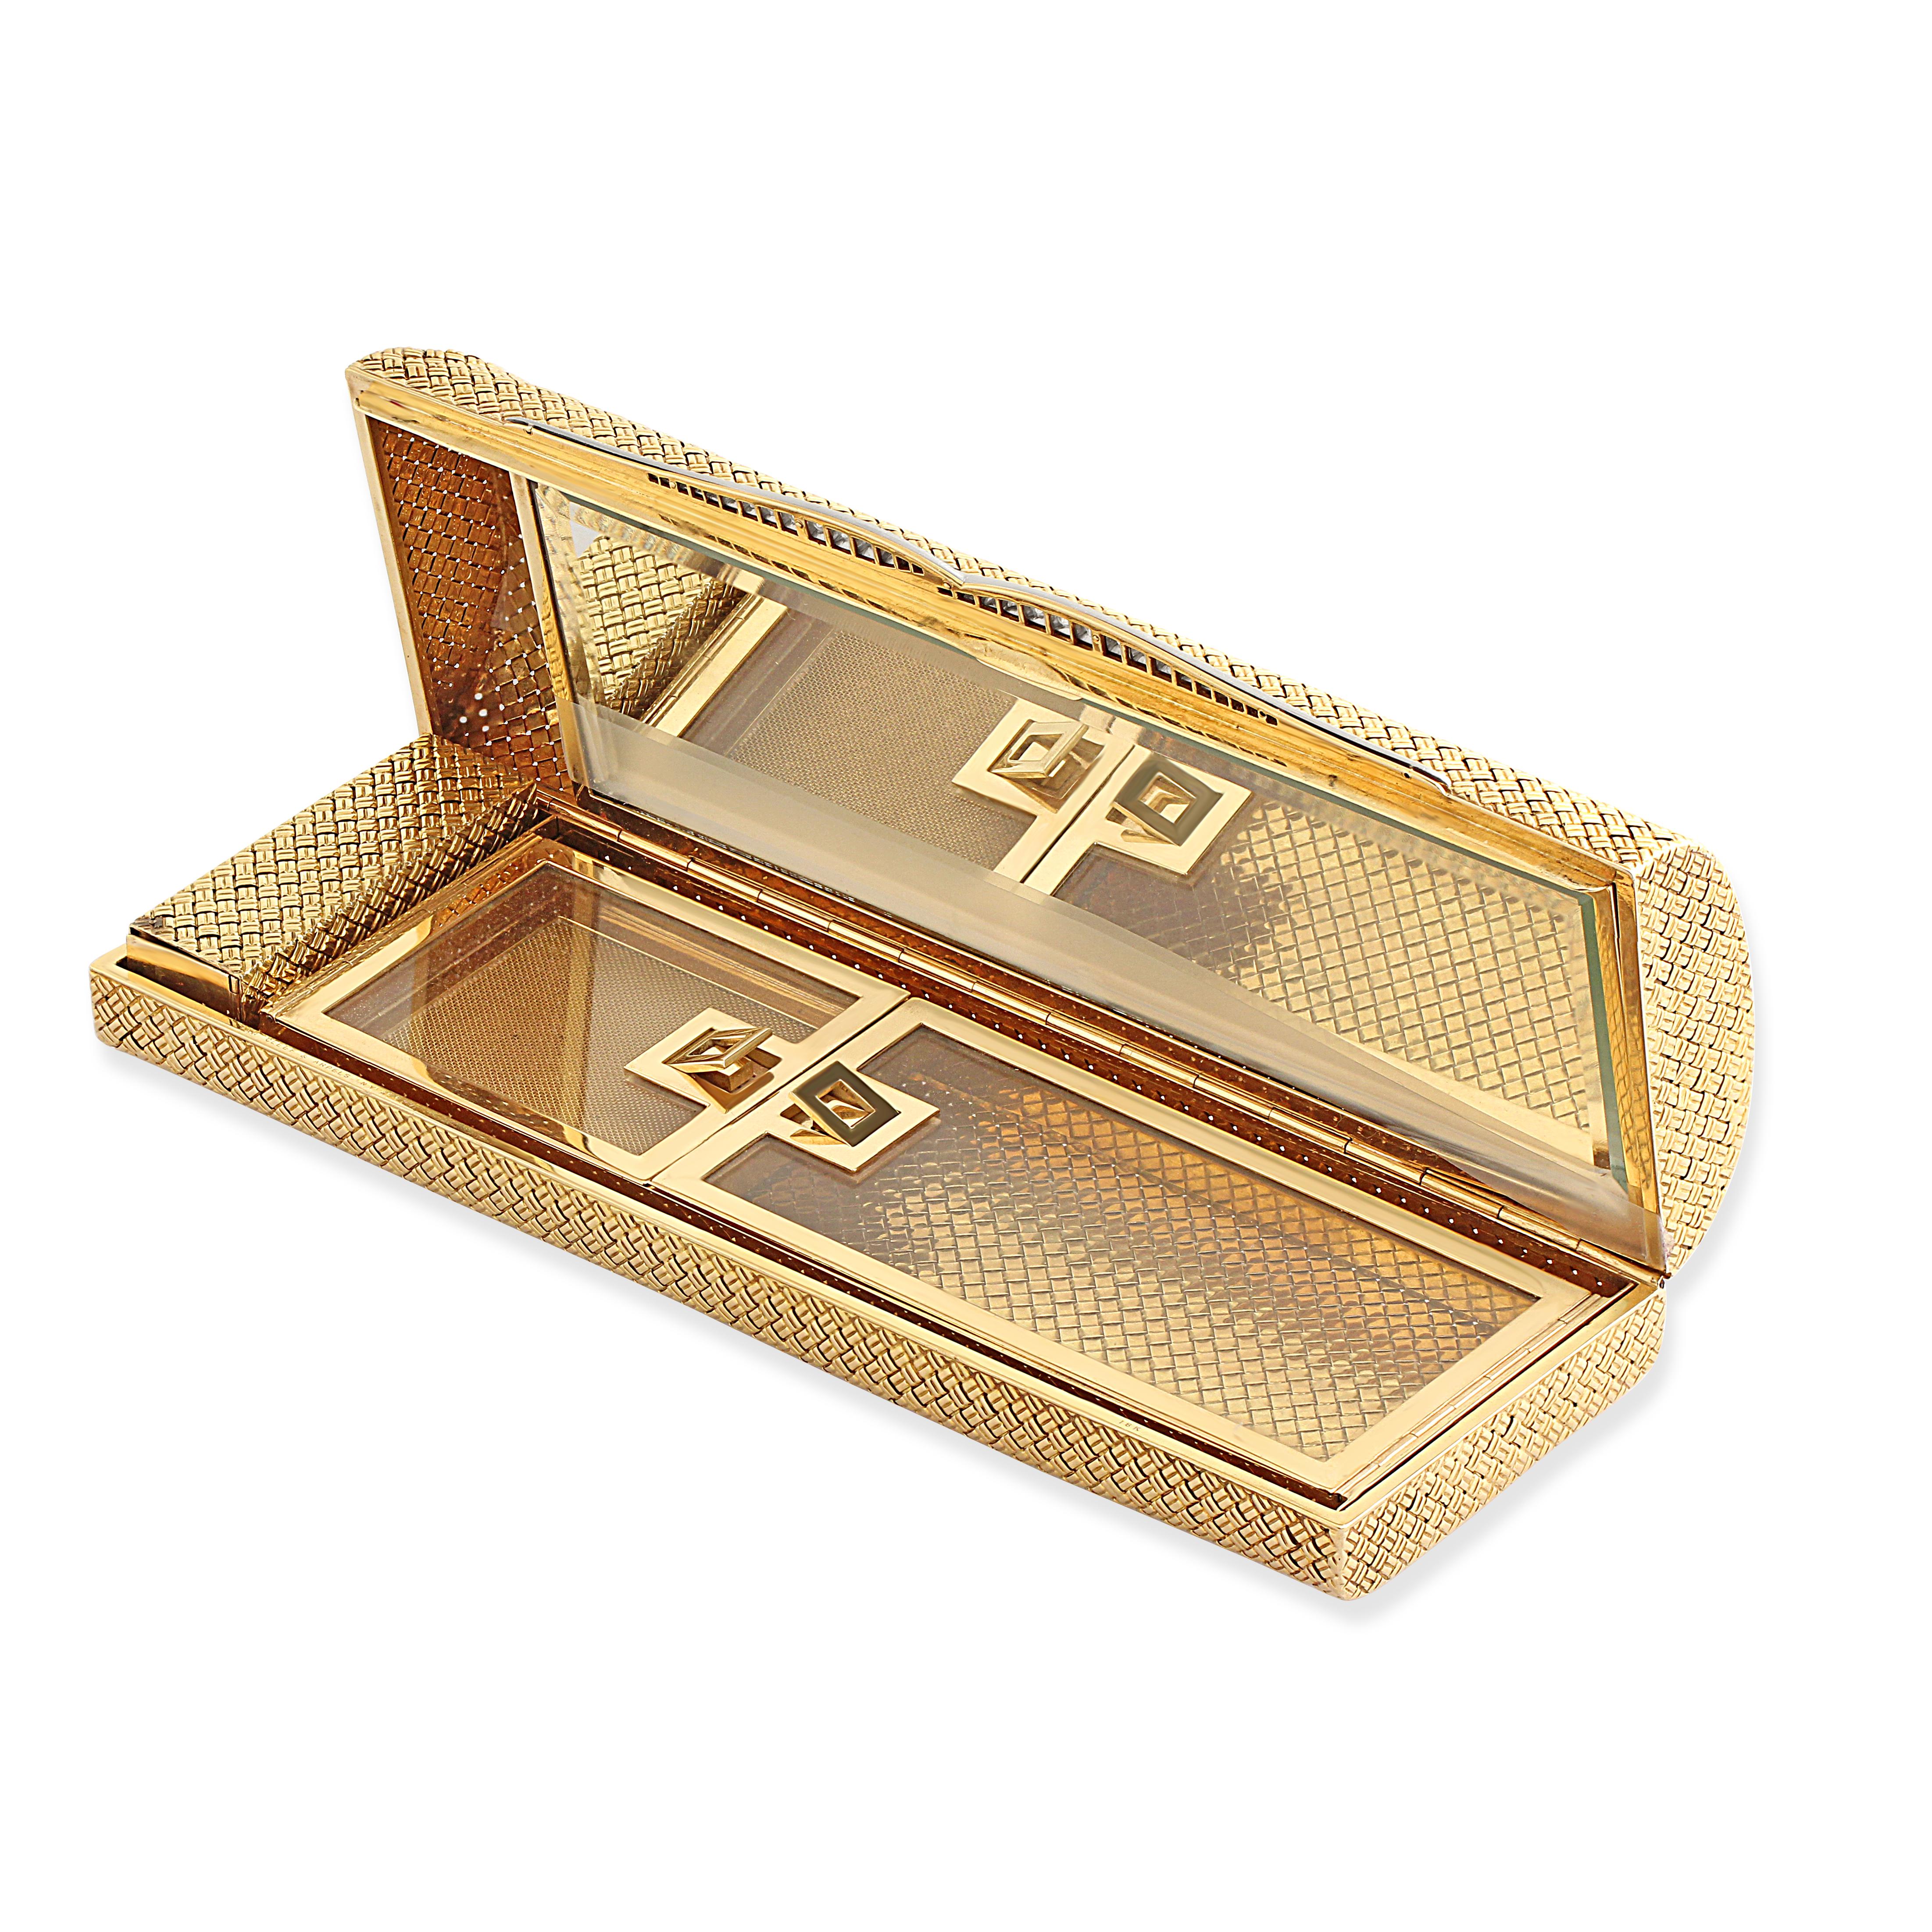 Eine Minaudiere aus 18 Karat Gold von Van Cleef & Arpels mit Diamanten an der Schließe. Mit einem Lippenstifthalter und separaten Fächern mit einem versteckten Bereich hinter dem Spiegel. Um 1960er.

Die Minaudière, ein kleines Kästchen voller